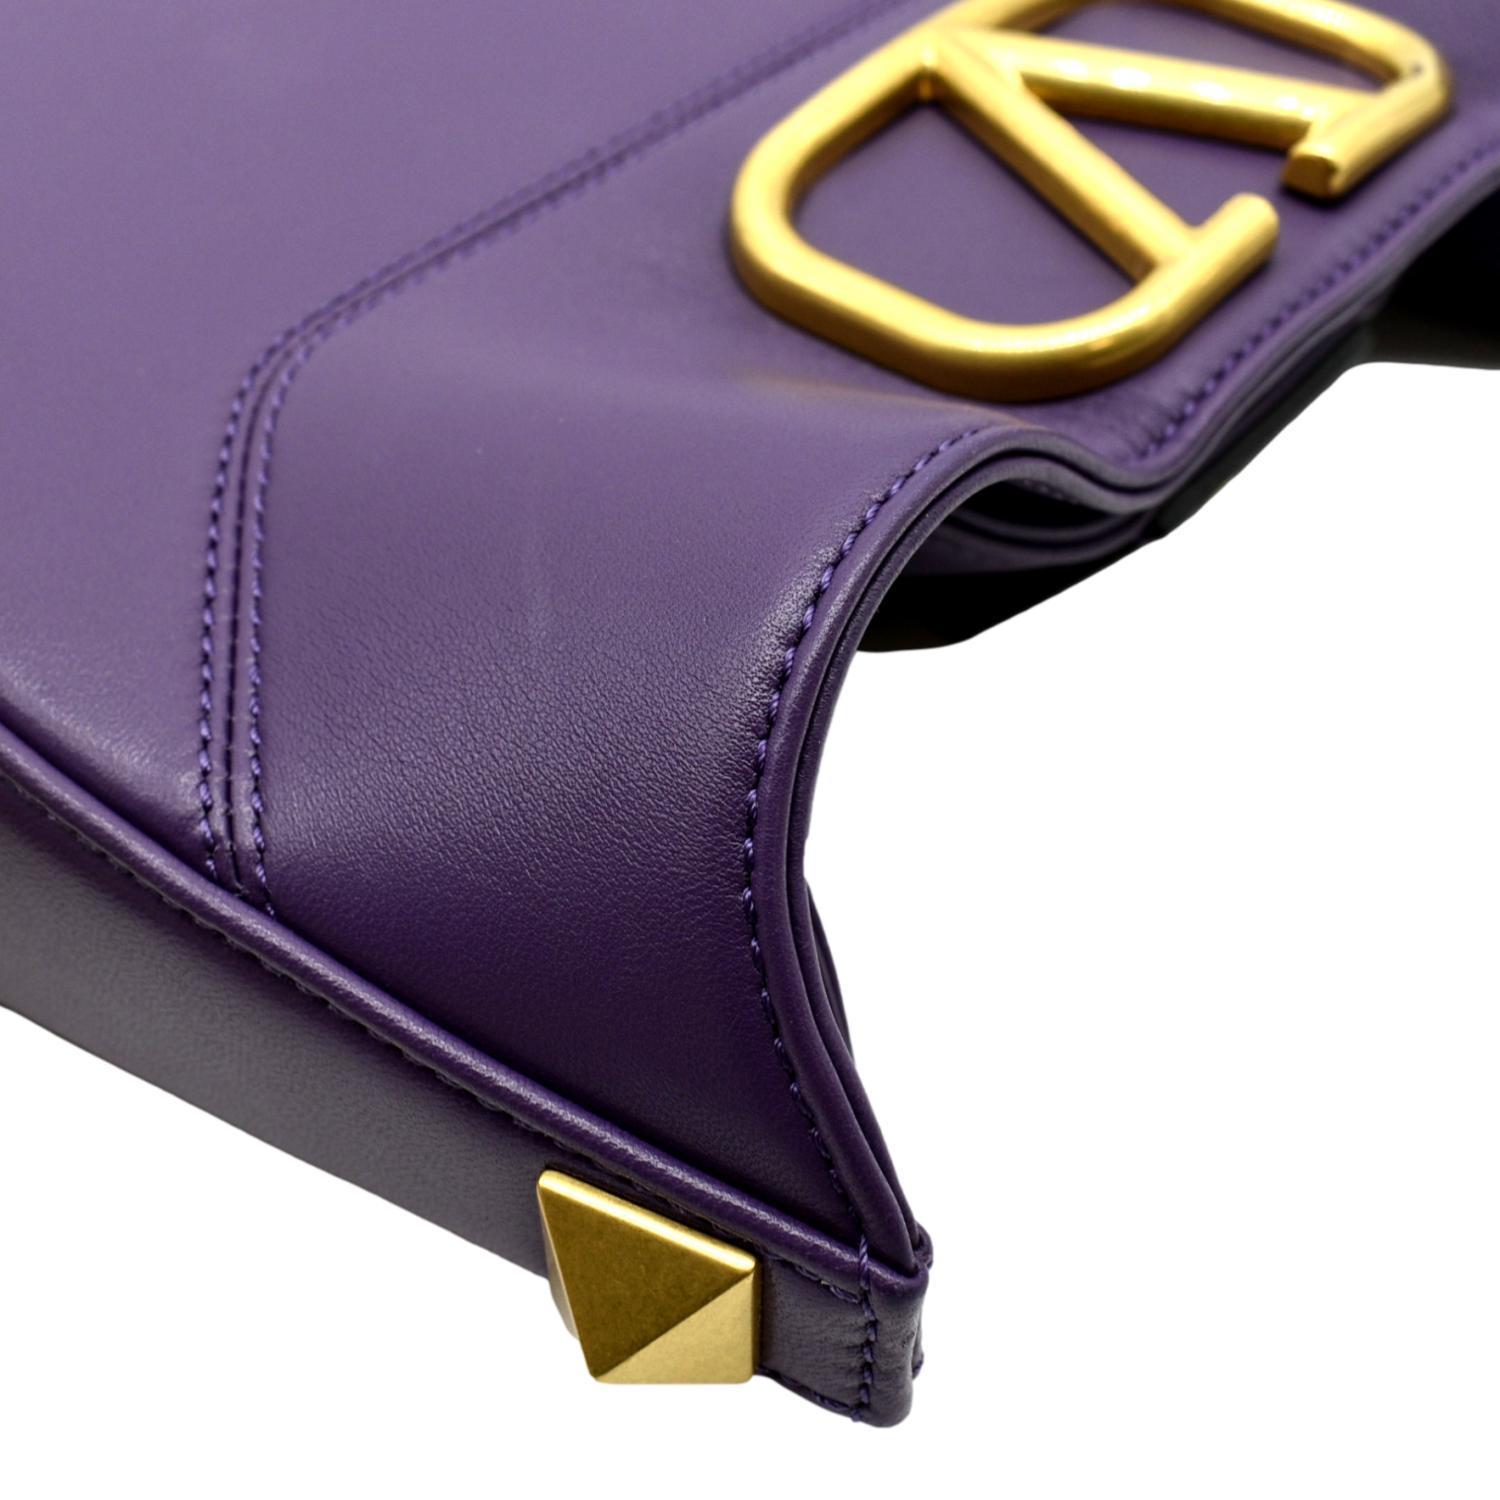 Valentino Vlogo Leather Shoulder Bag